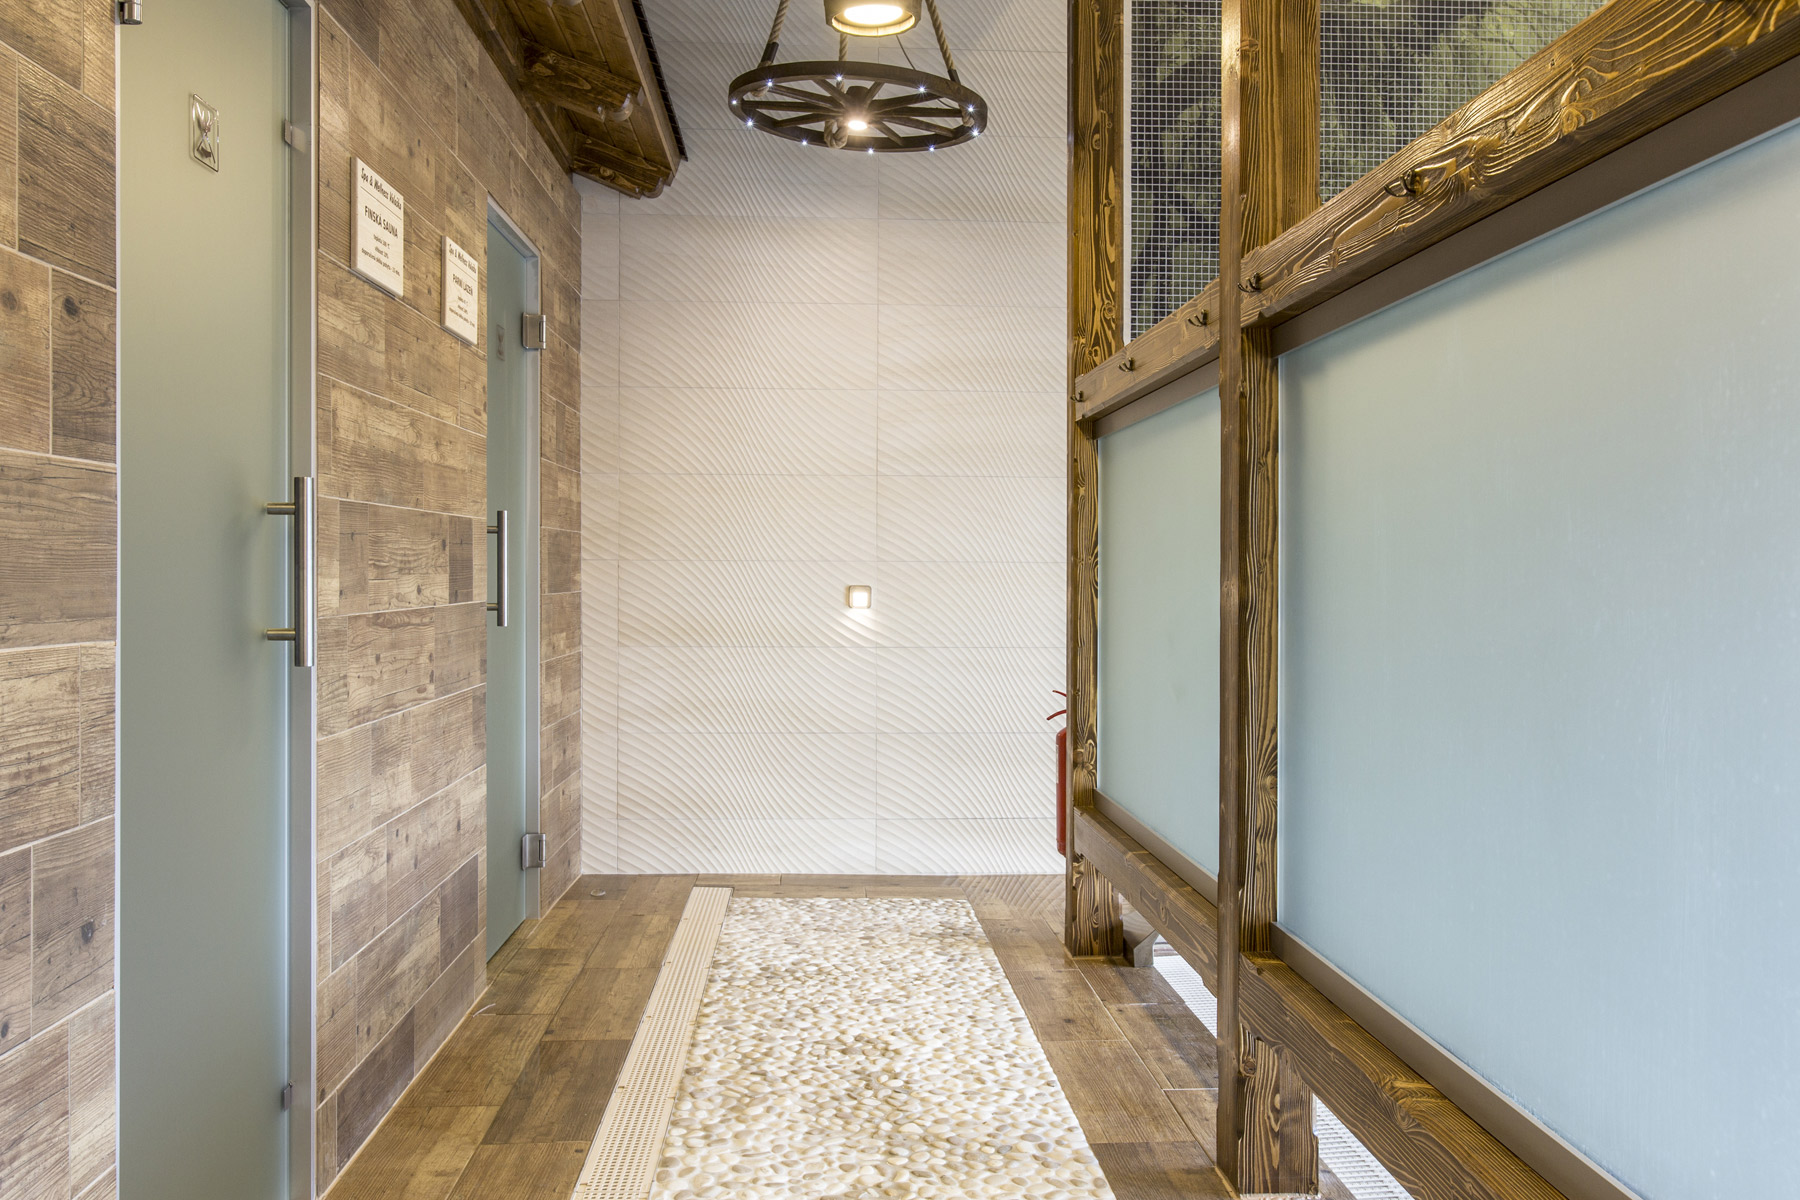 Skleněné stěny před saunou a parní lázní jsou vyrobeny ze skla satináto.